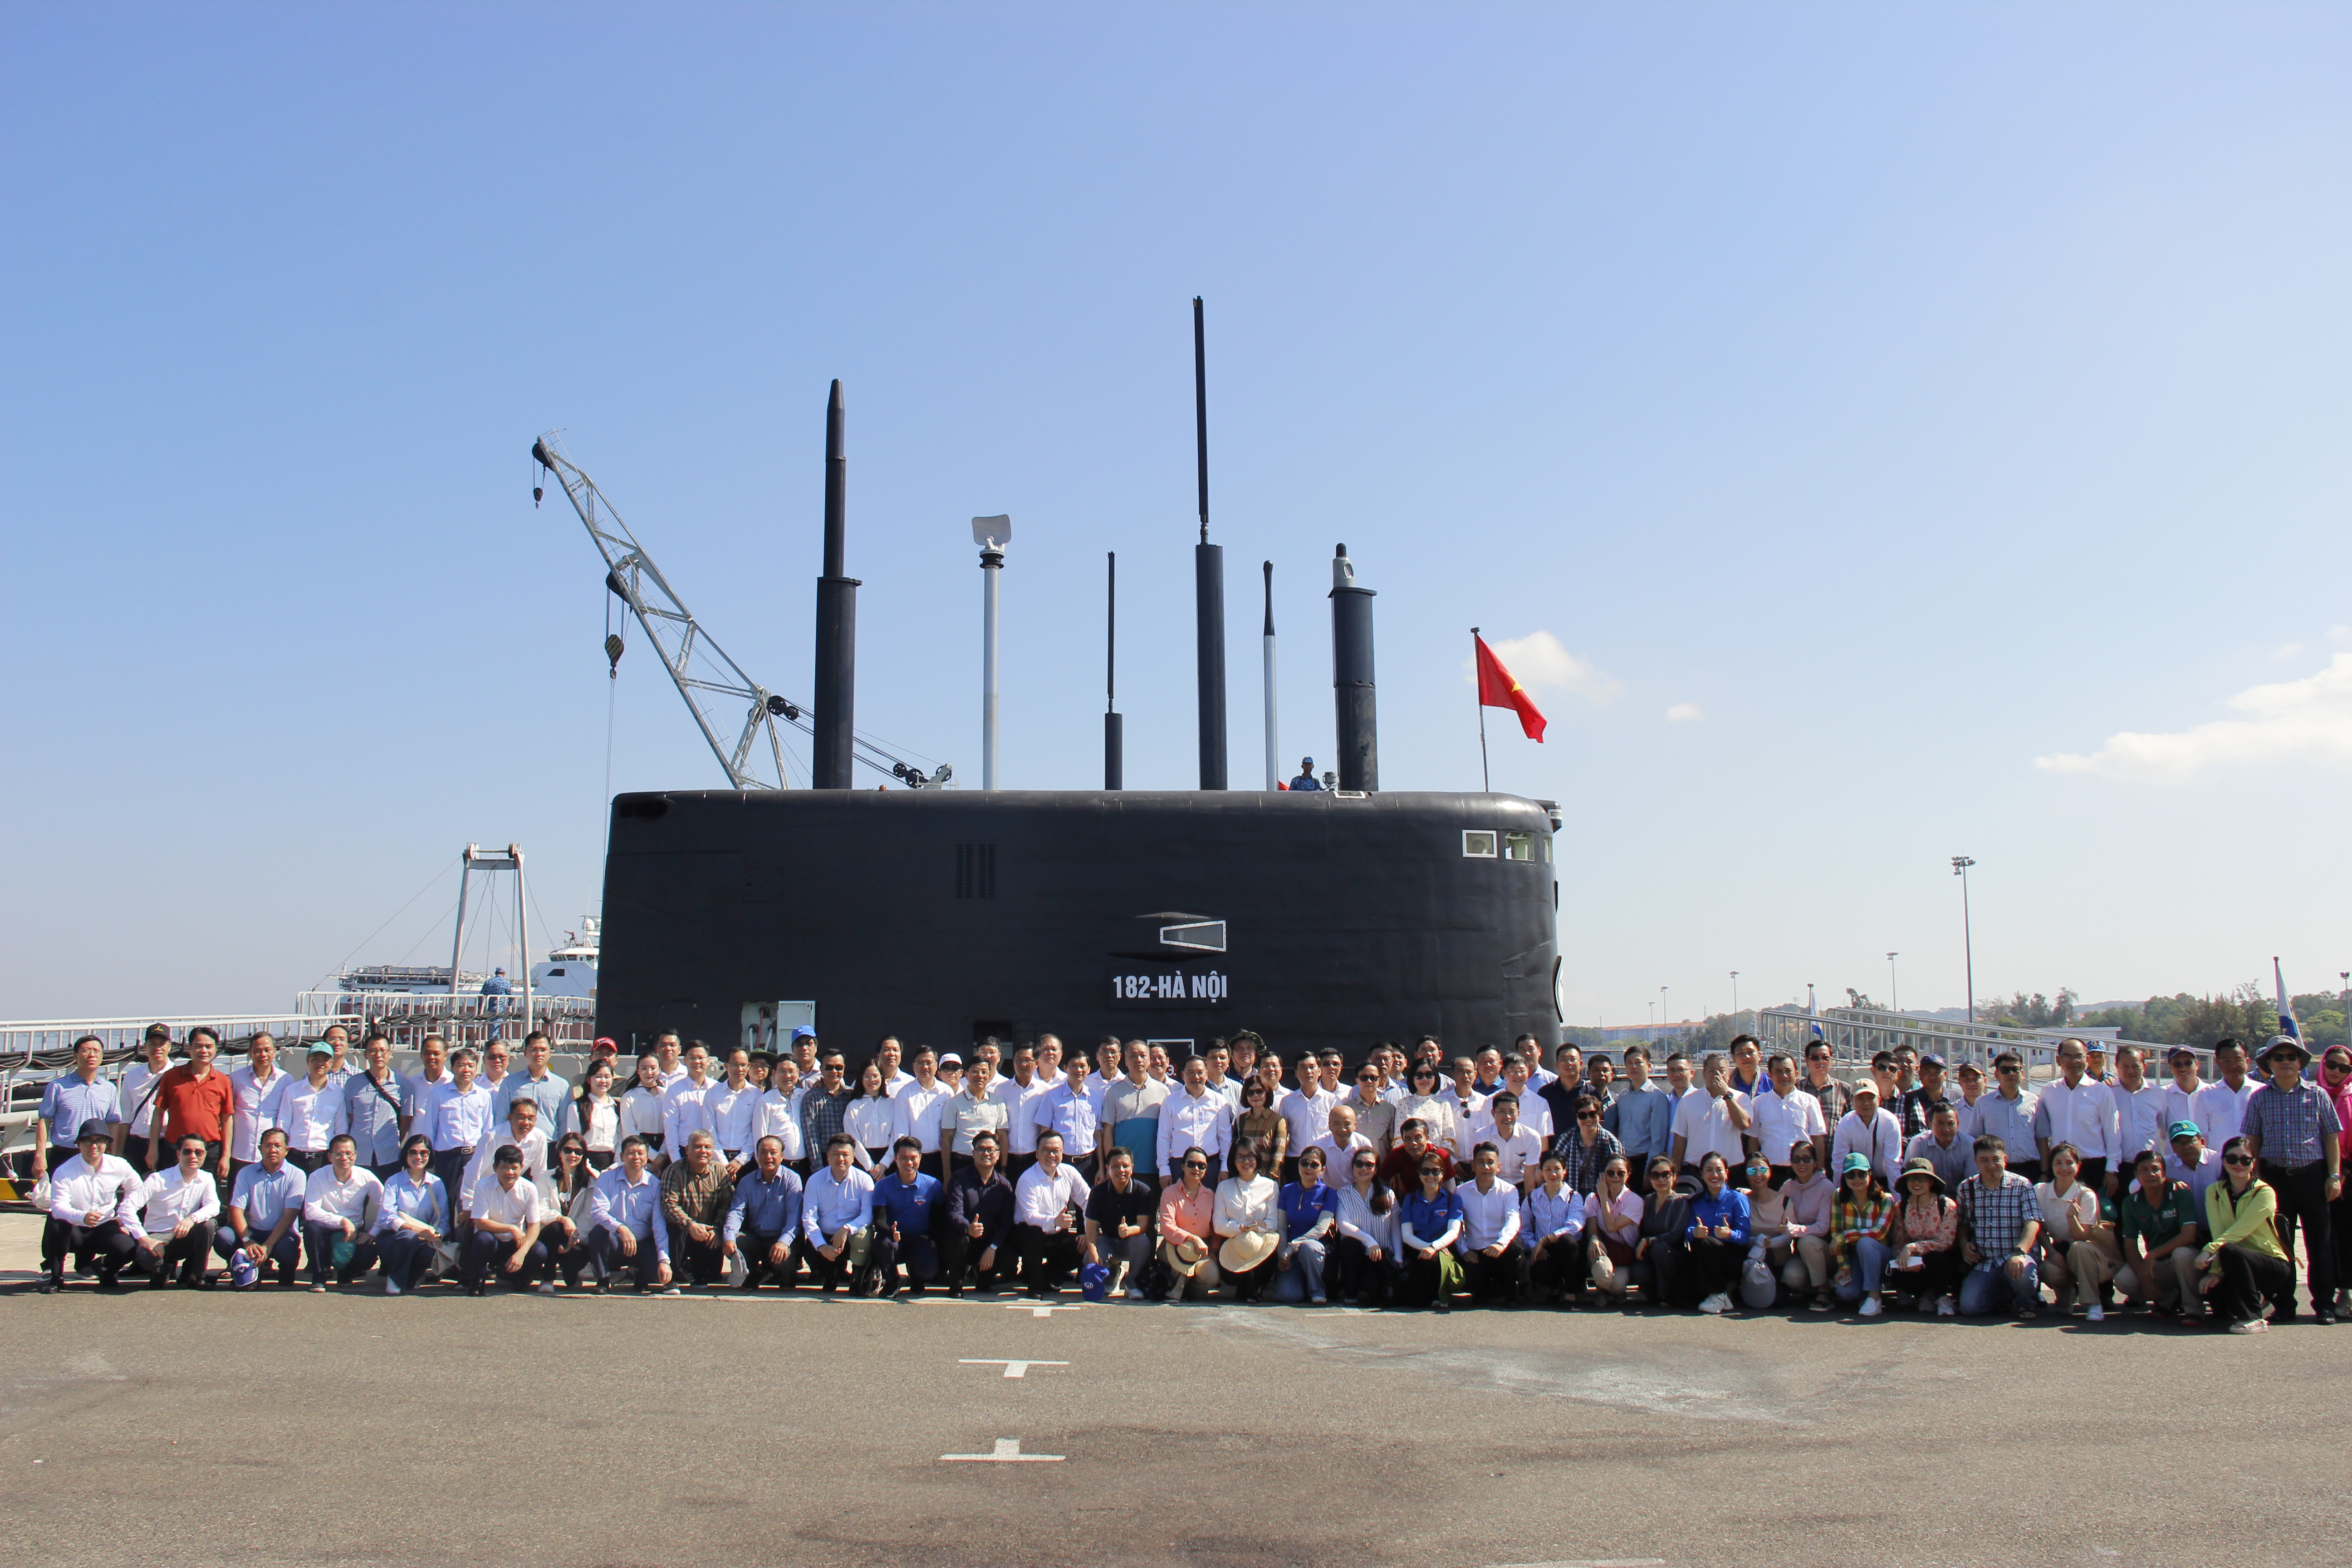  Đoàn công tác thăm quan Lữ đoàn tàu ngầm 189, Quân chủng Hải quân.